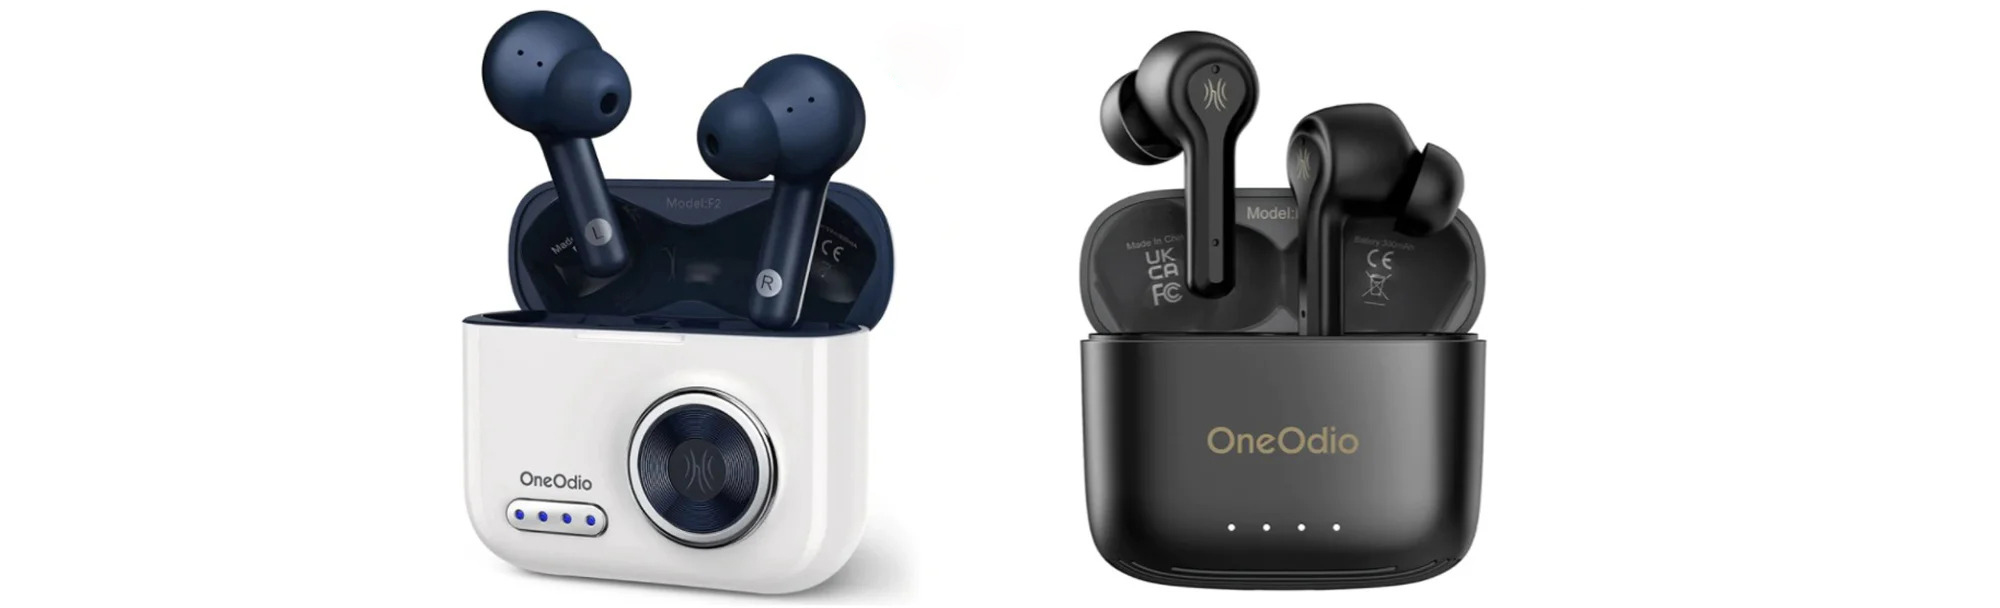 OneOdio F1 és F2 TWS fülhallgatók tesztje 2